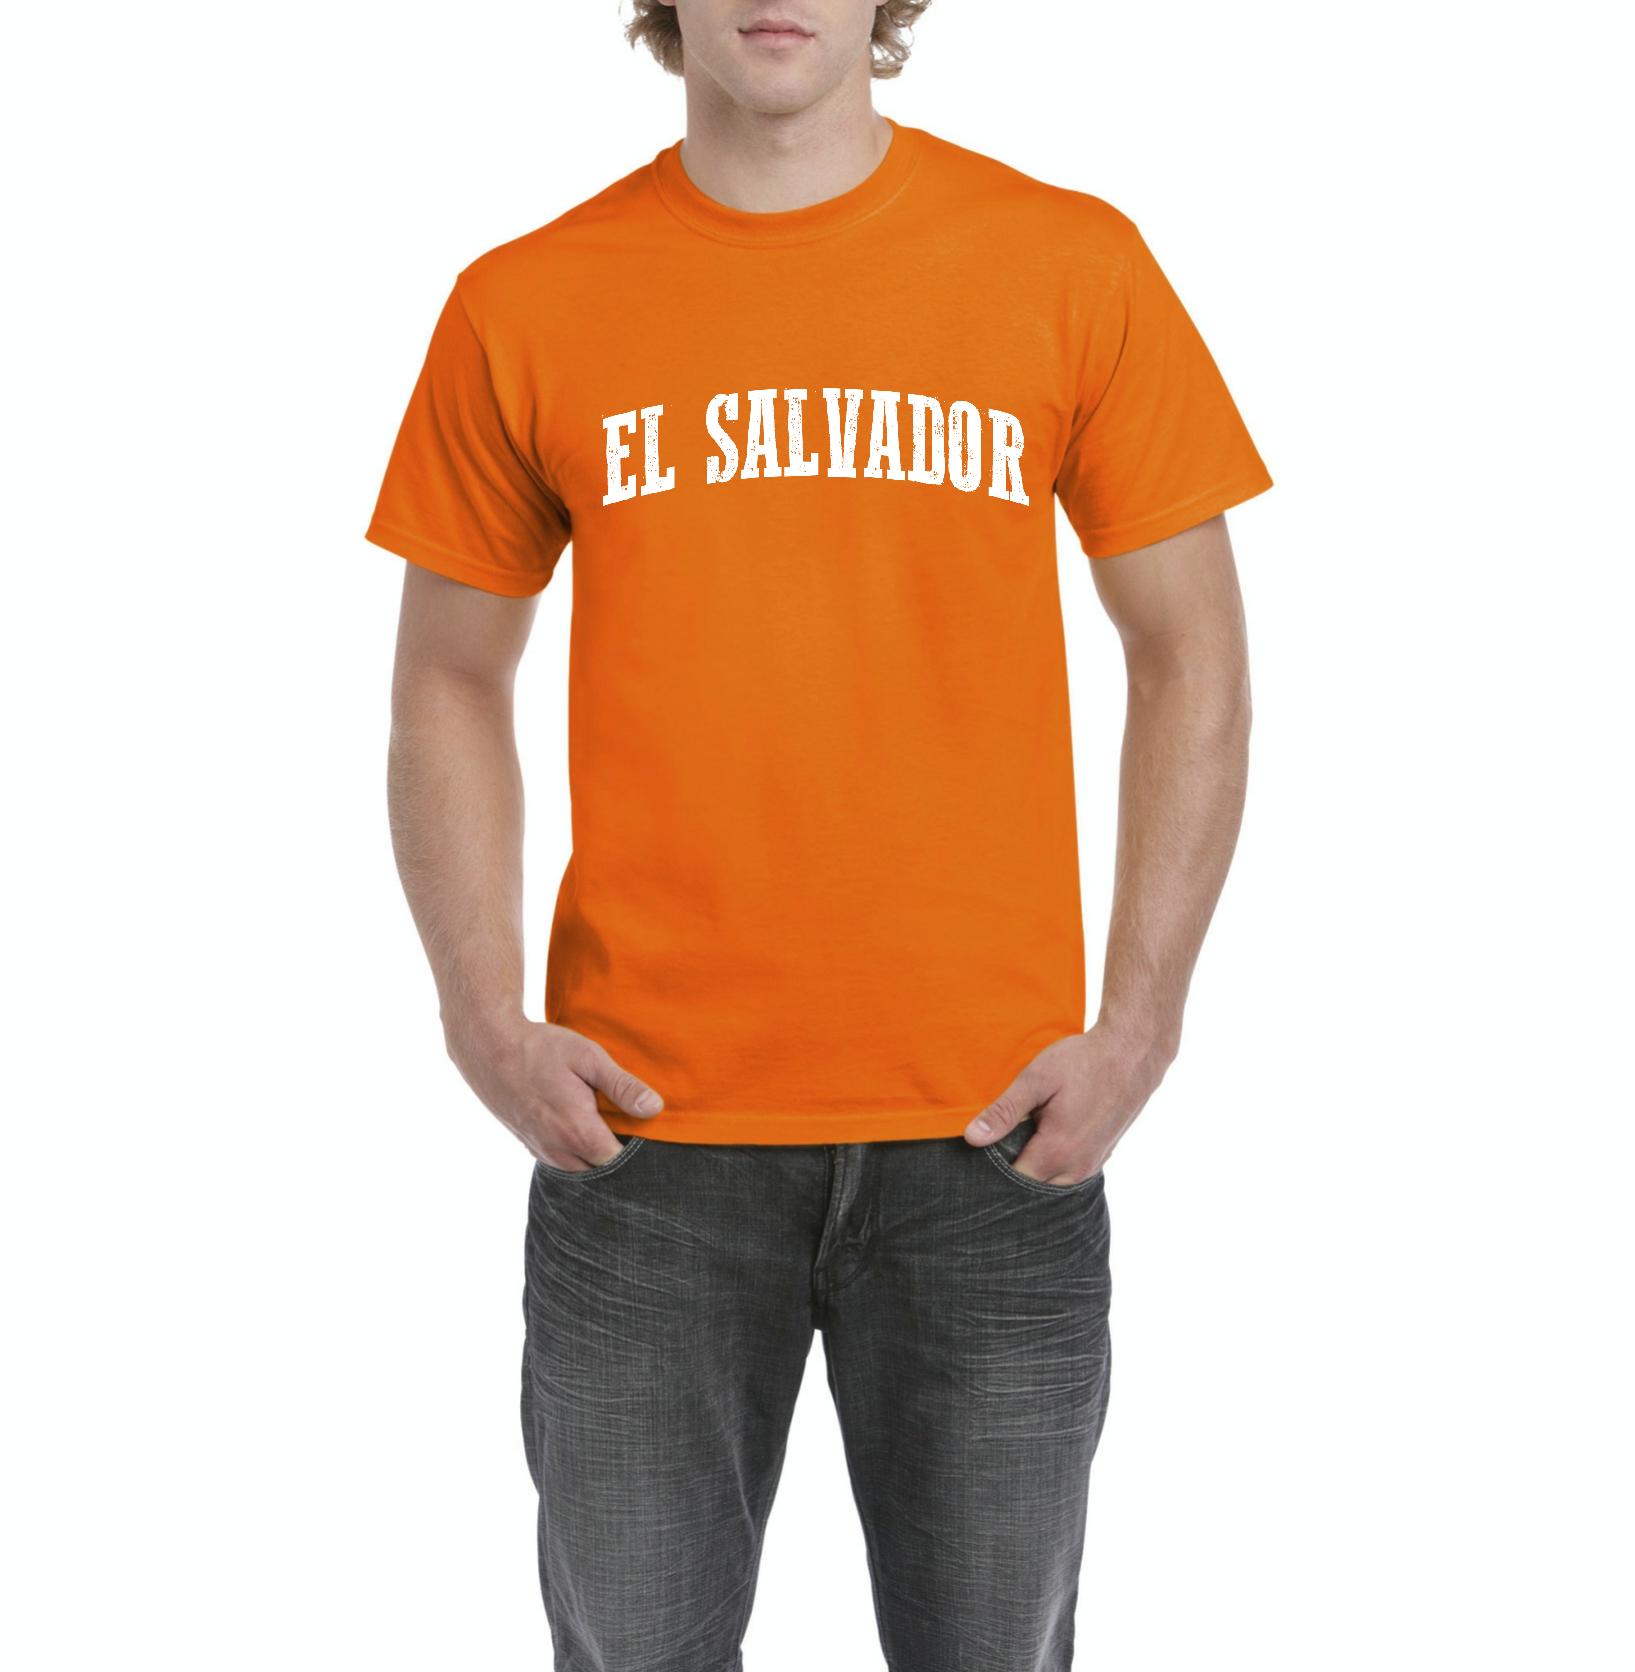 NIB - Men's T-Shirt Short Sleeve - El Salvador - image 1 of 3